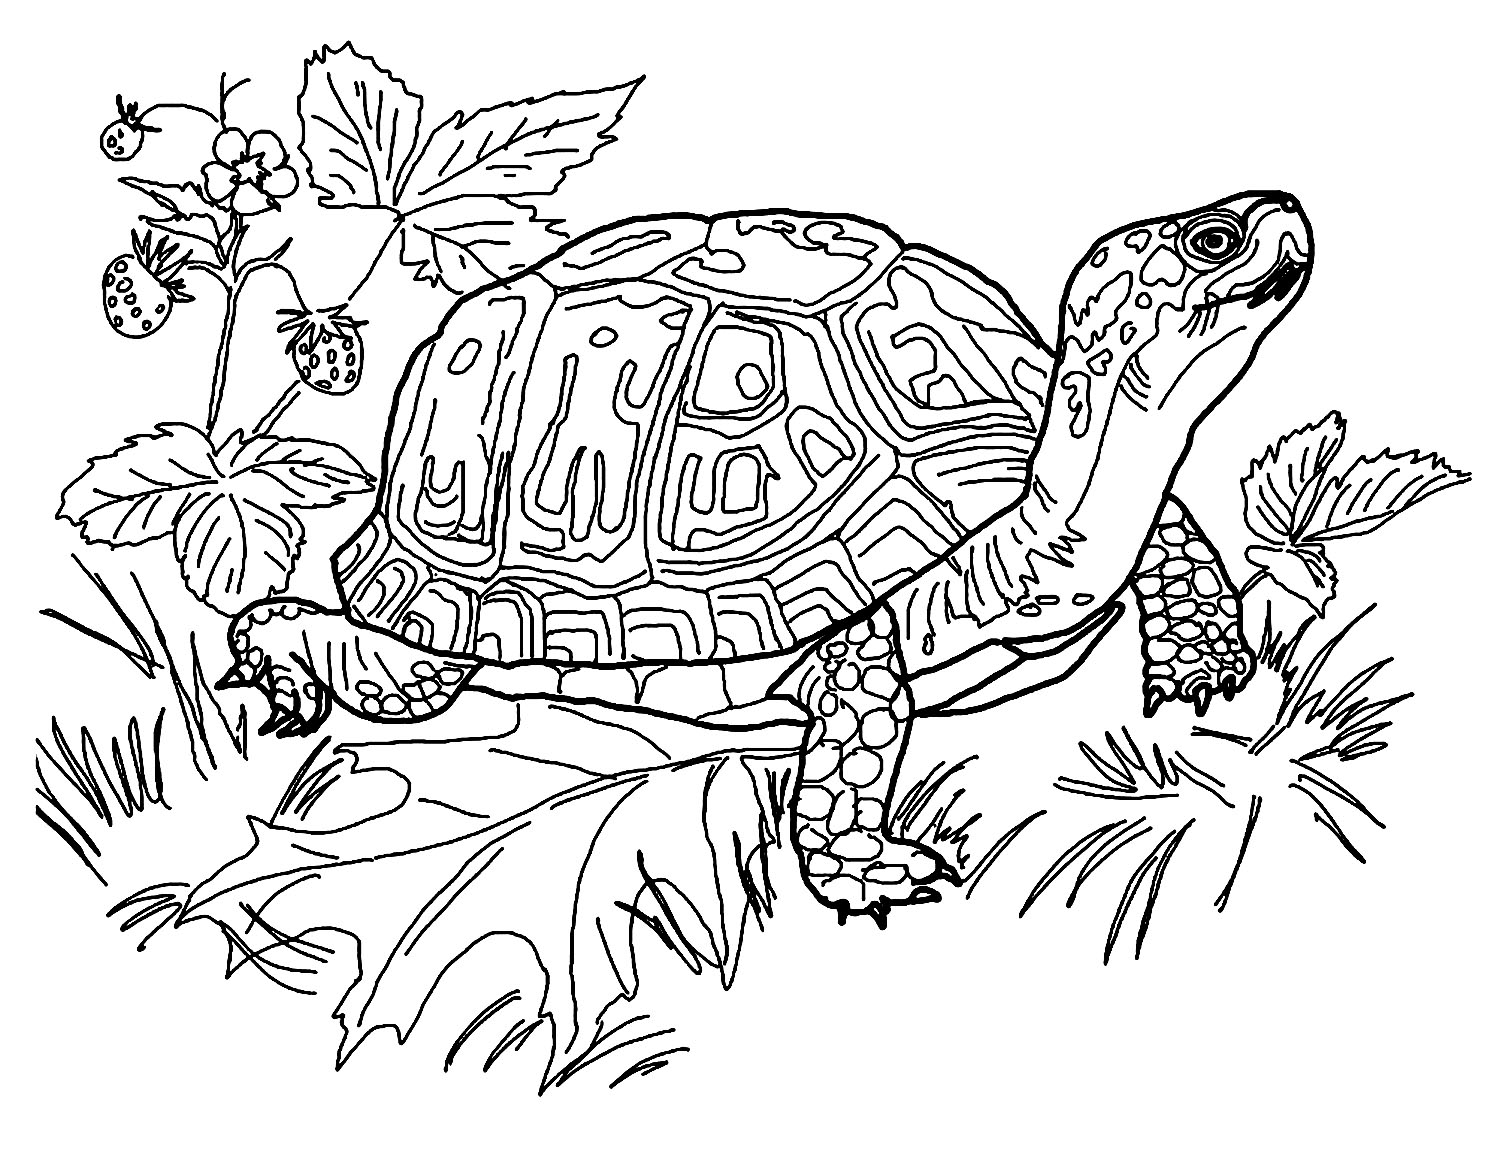 Prepara tus lápices y rotuladores para colorear este libro para colorear de tortugas.